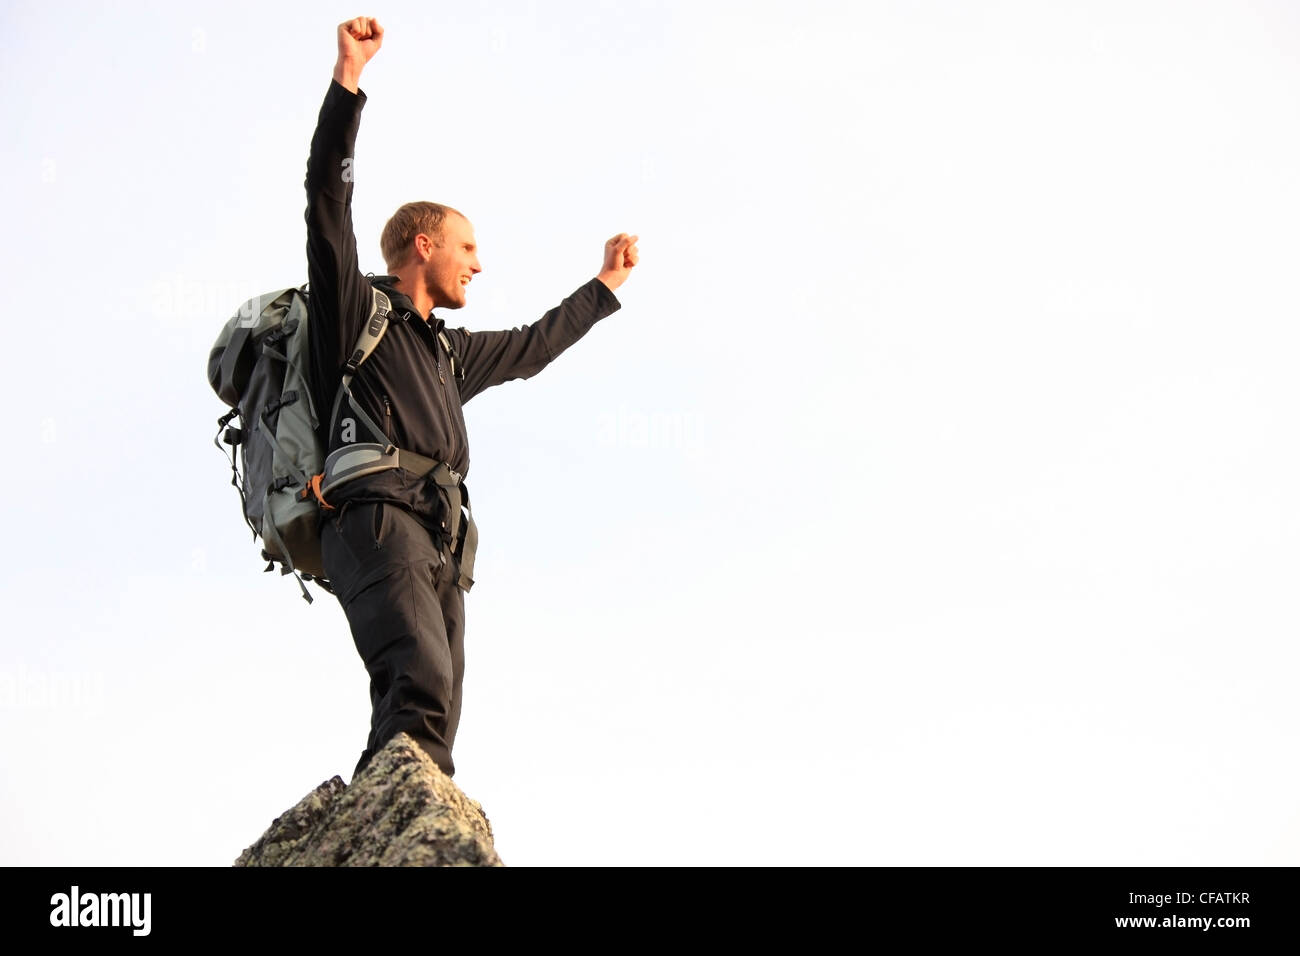 Giovane uomo alza il pugno in trionfo dopo aver scalato una montagna, Yukon, Canada Foto Stock